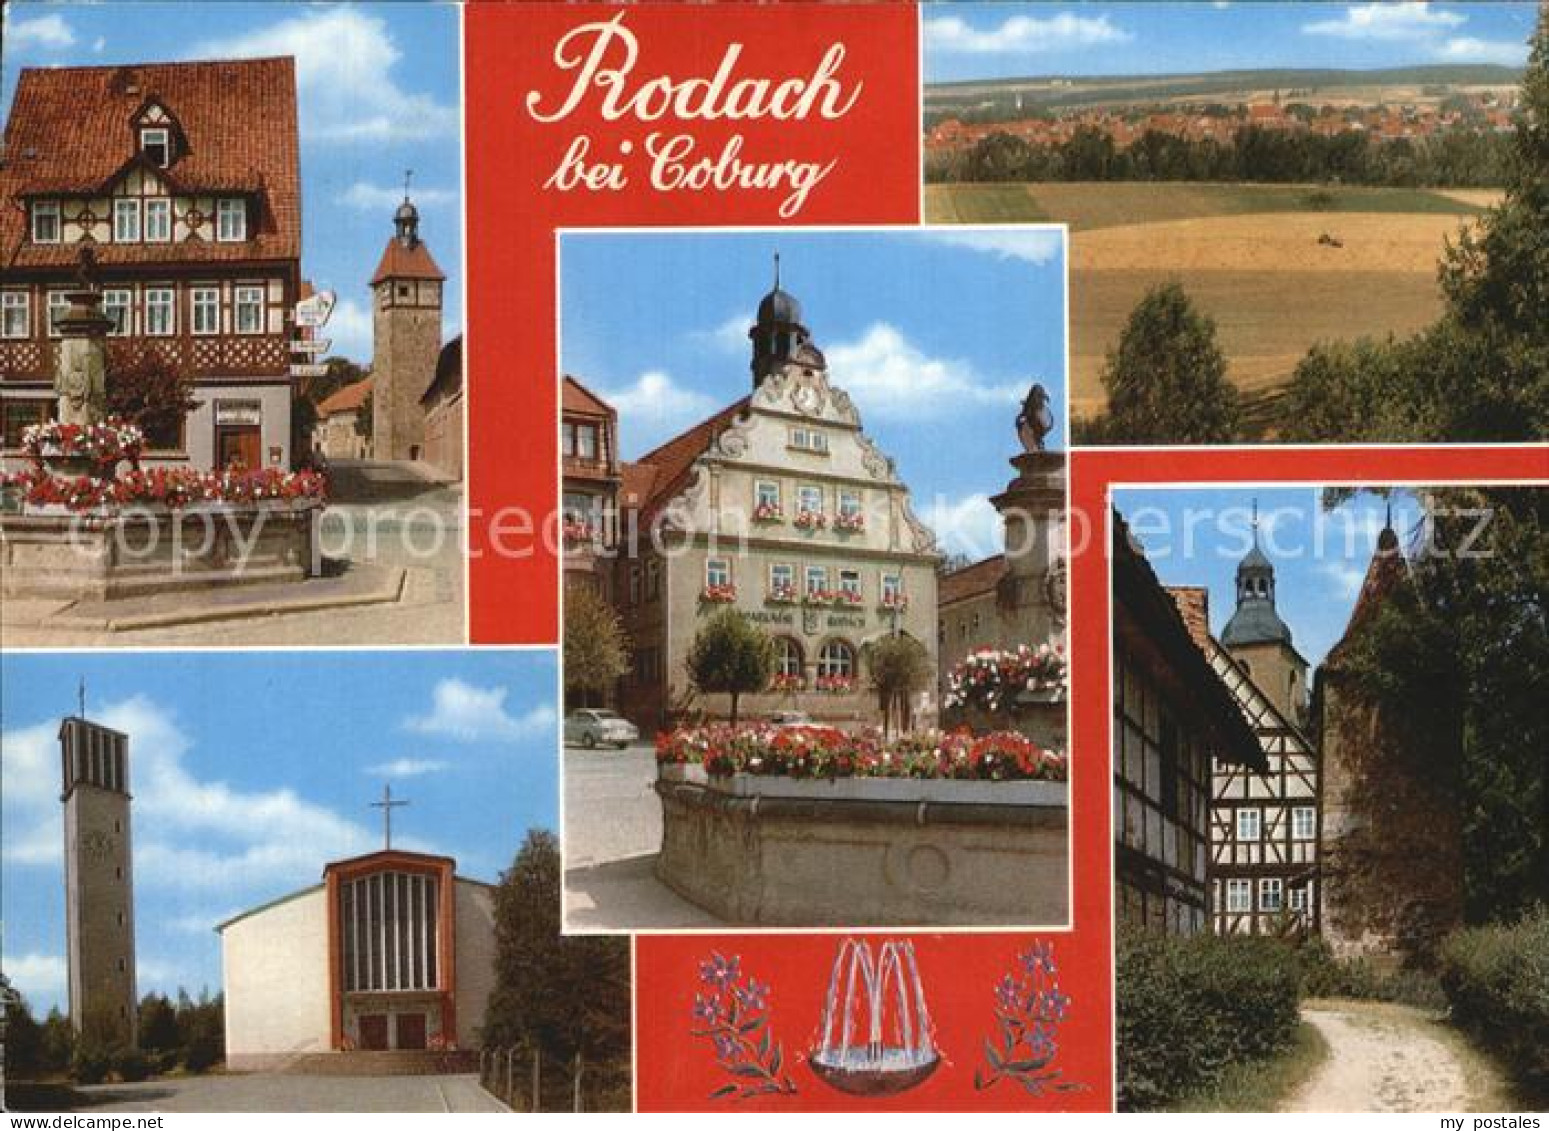 72462028 Rodach Coburg Thermalquelle Rodach Coburg - Bad Rodach